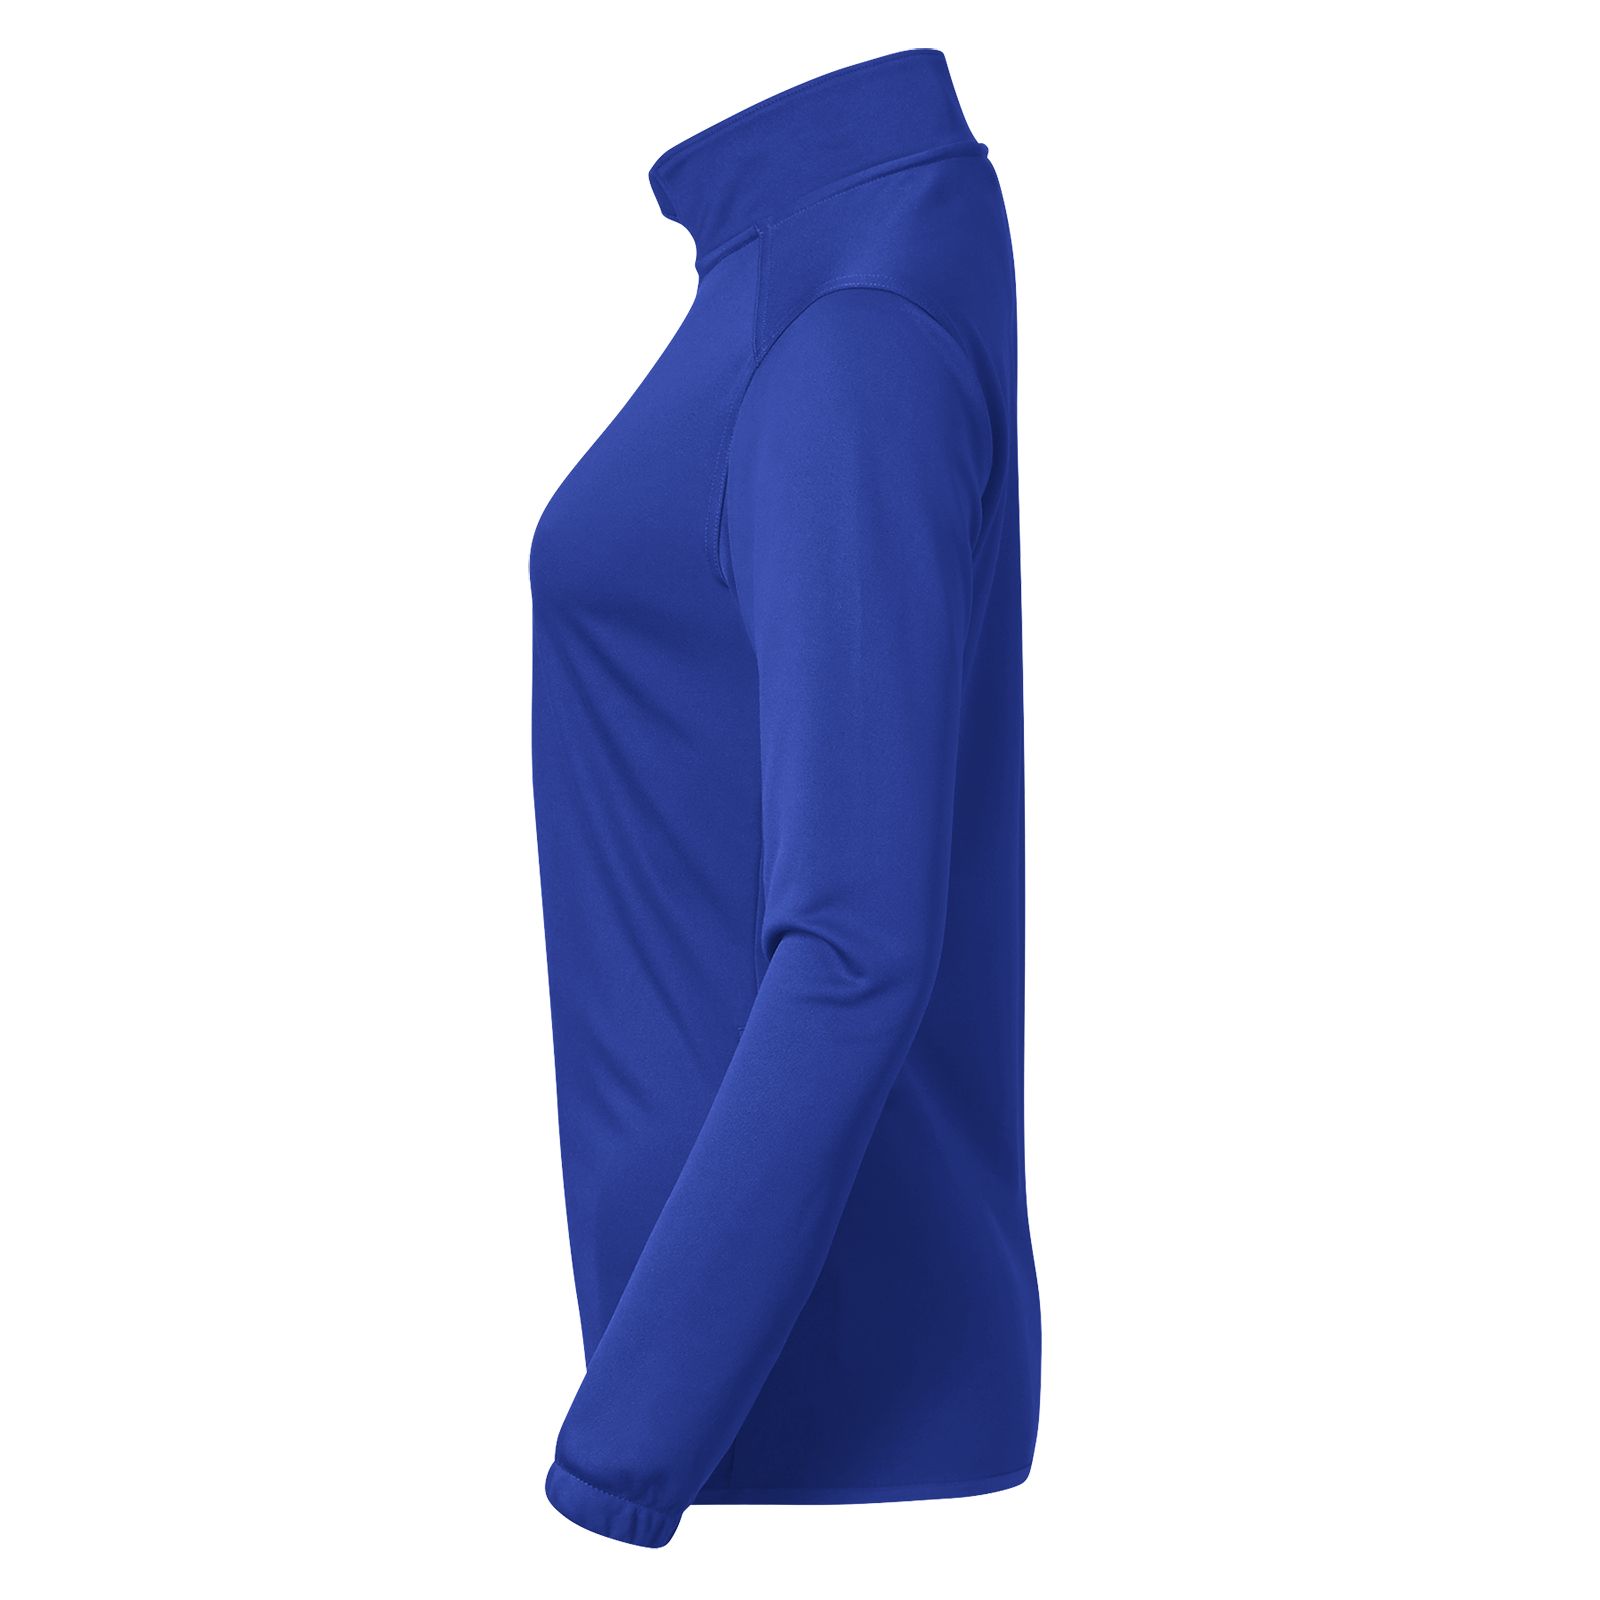 NBW Custom Knit Training Jacket, Royal Blue image number 1